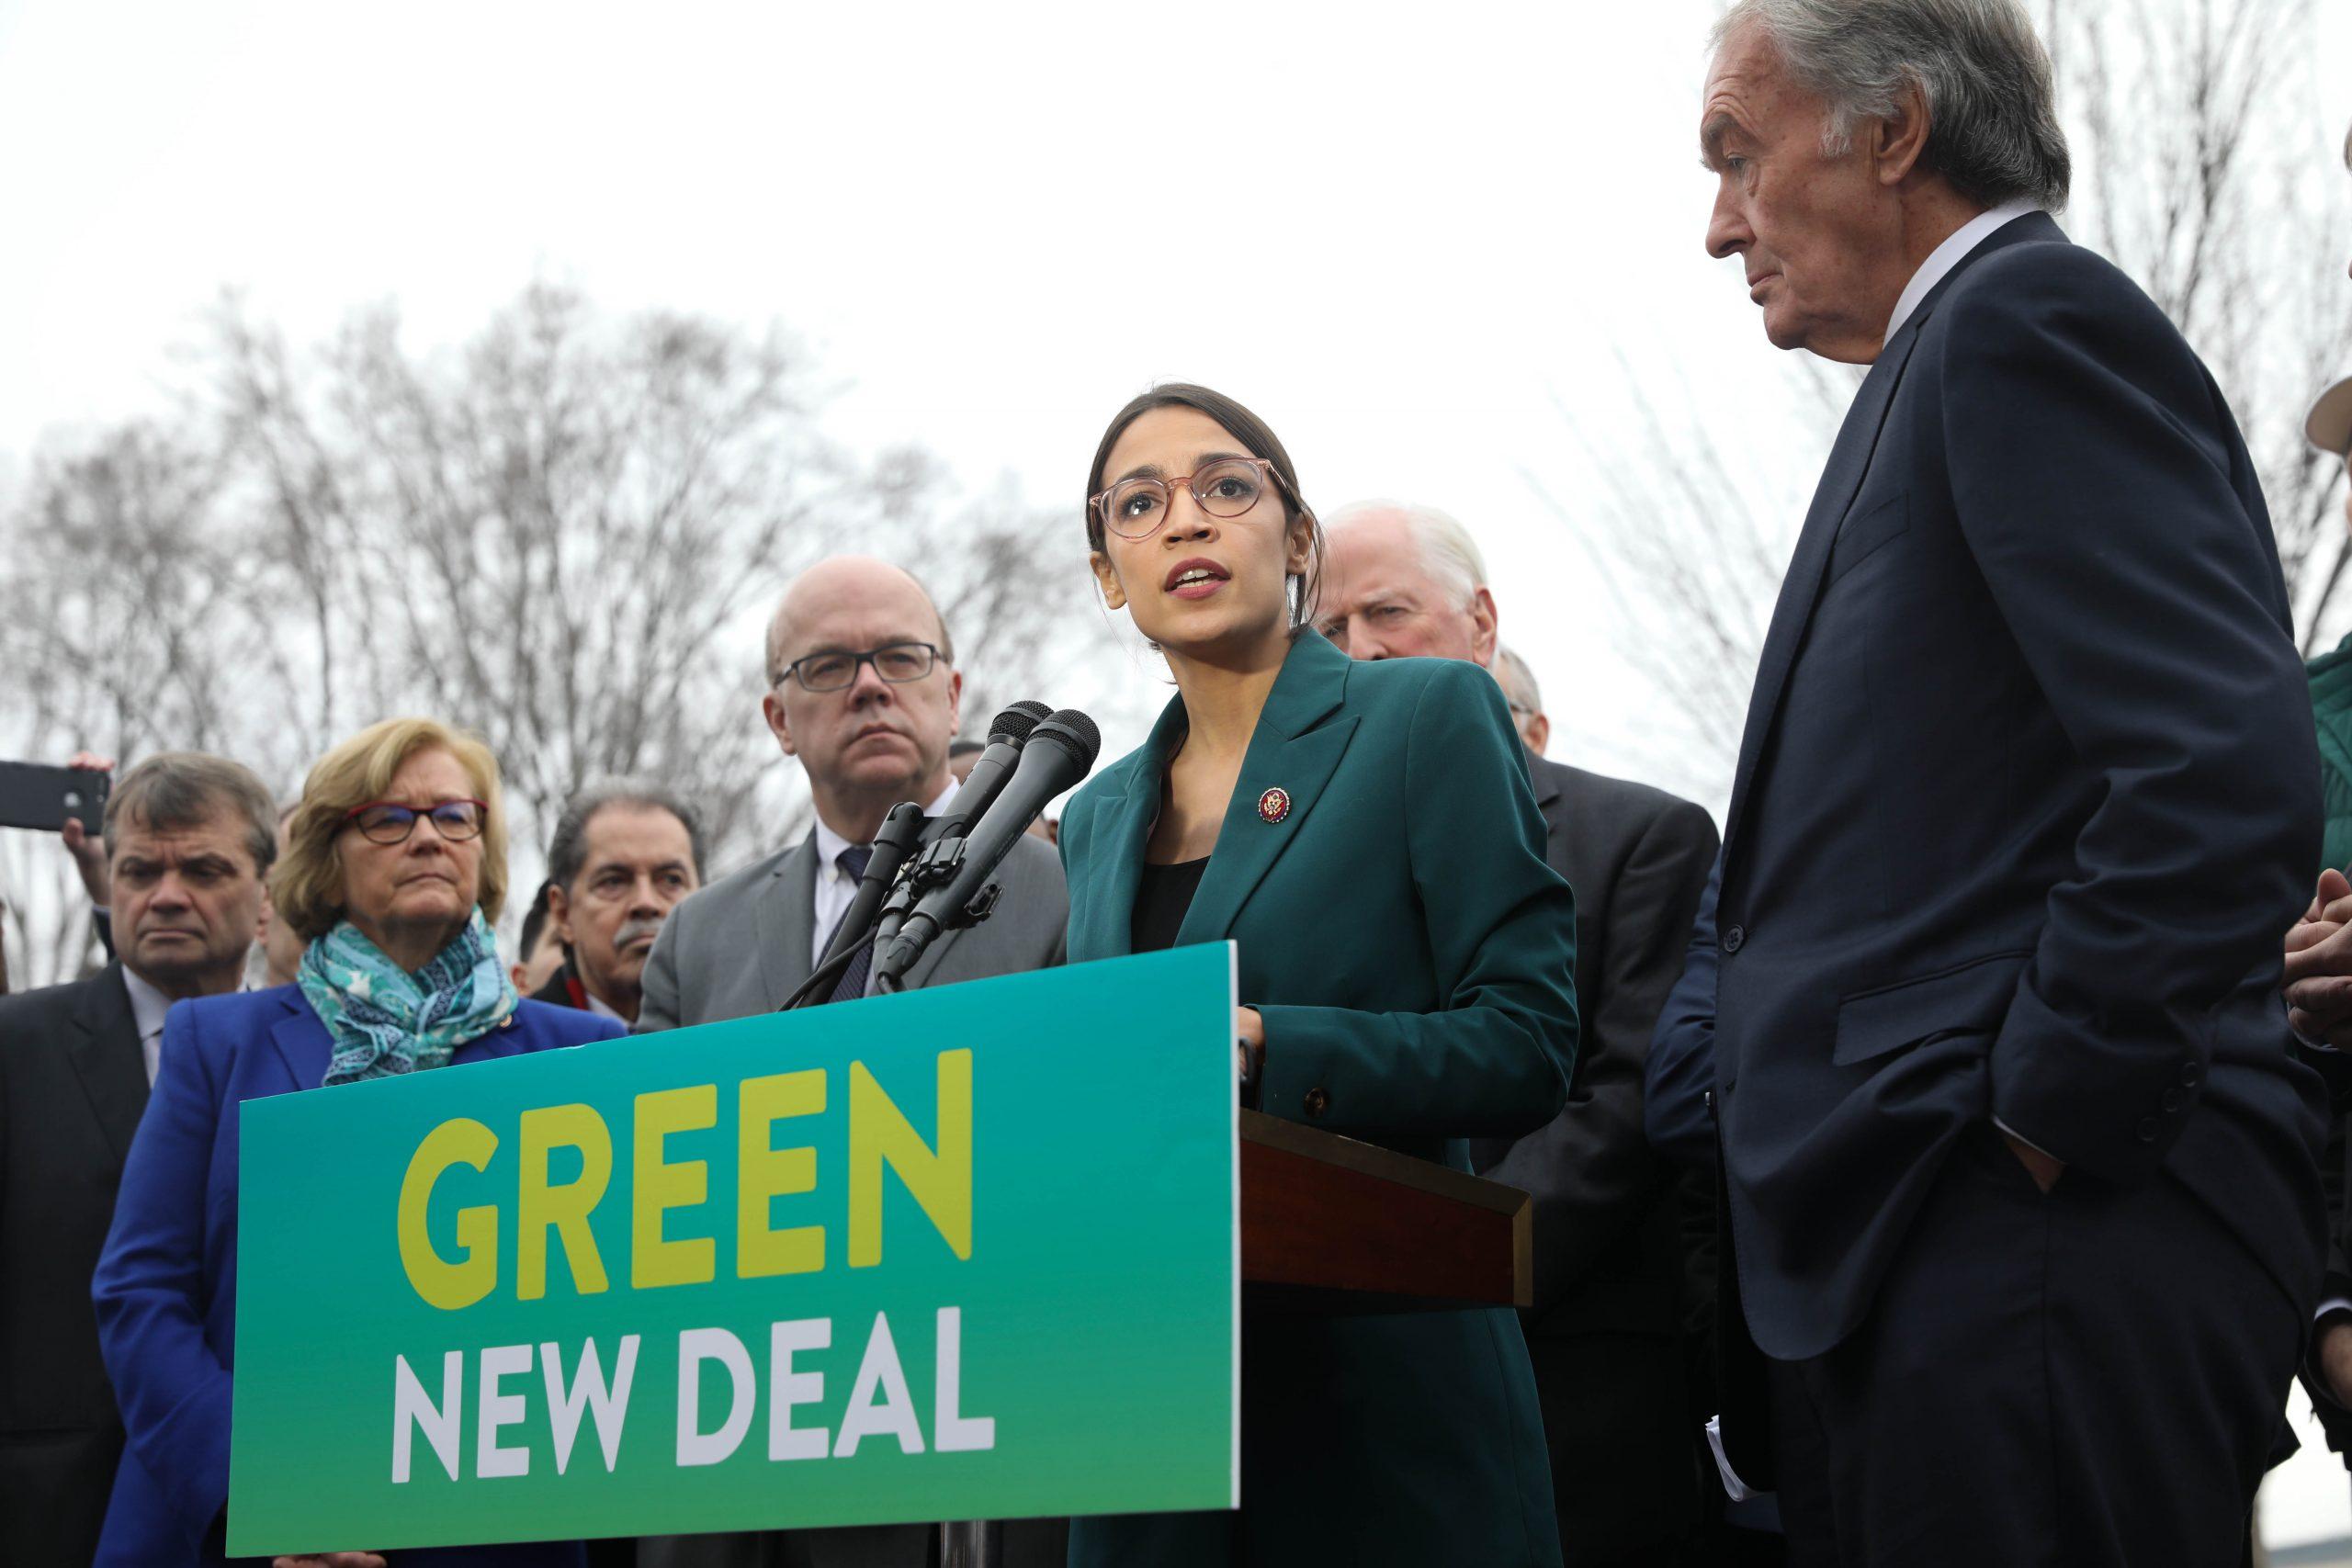 Die Abgeordneten Alexandria Ocasio-Cortez und Ed Markey bei der Präsentation des Gesetzesentwurfs für einen Green New Deal im Februar 2019. (Wikimedia Commons)